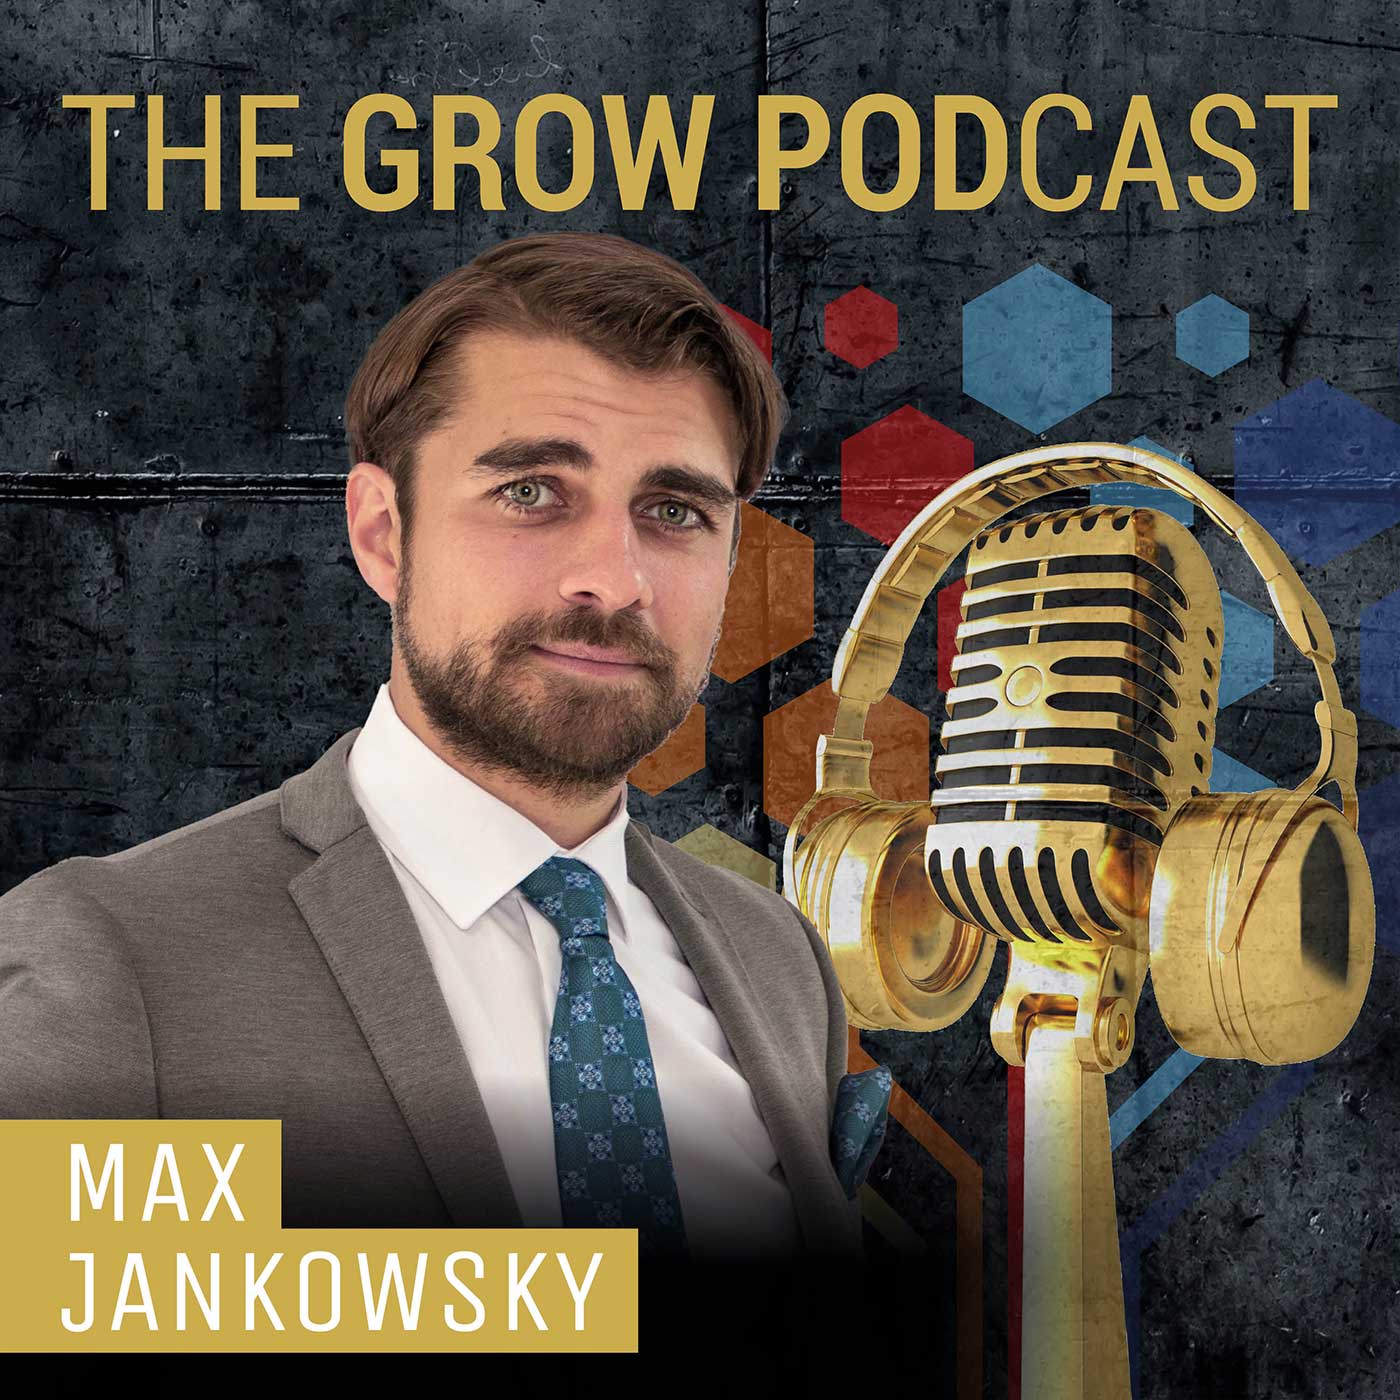 Interview mit Max Jankowsky zur aktuellen Situation ⚡️ Energiekrise, Ideen, was ist jetzt wichtig? - Teil 1